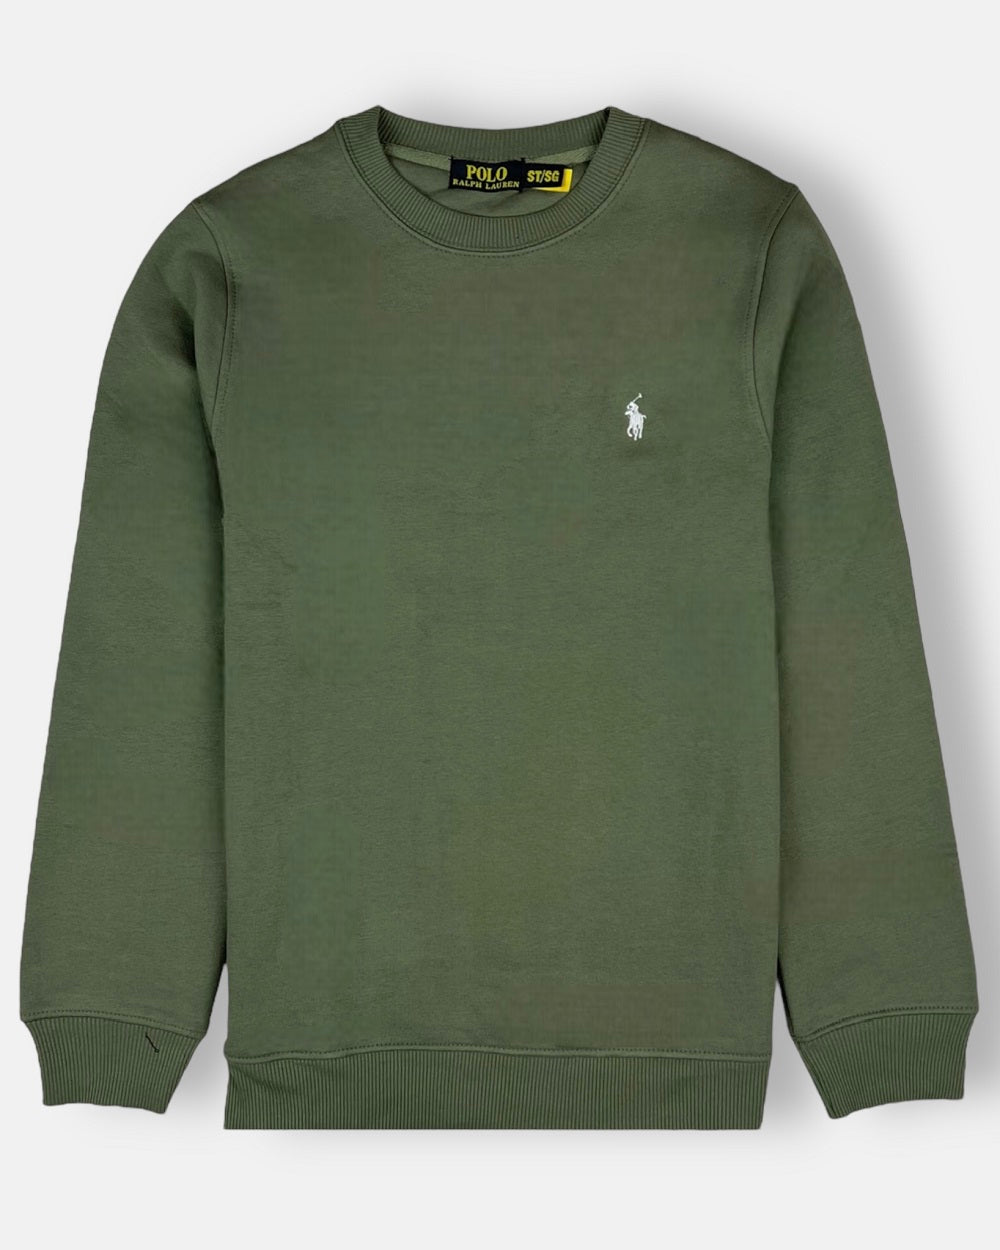 RL premium Single pony Fleece sweatshirt (Olive Green)